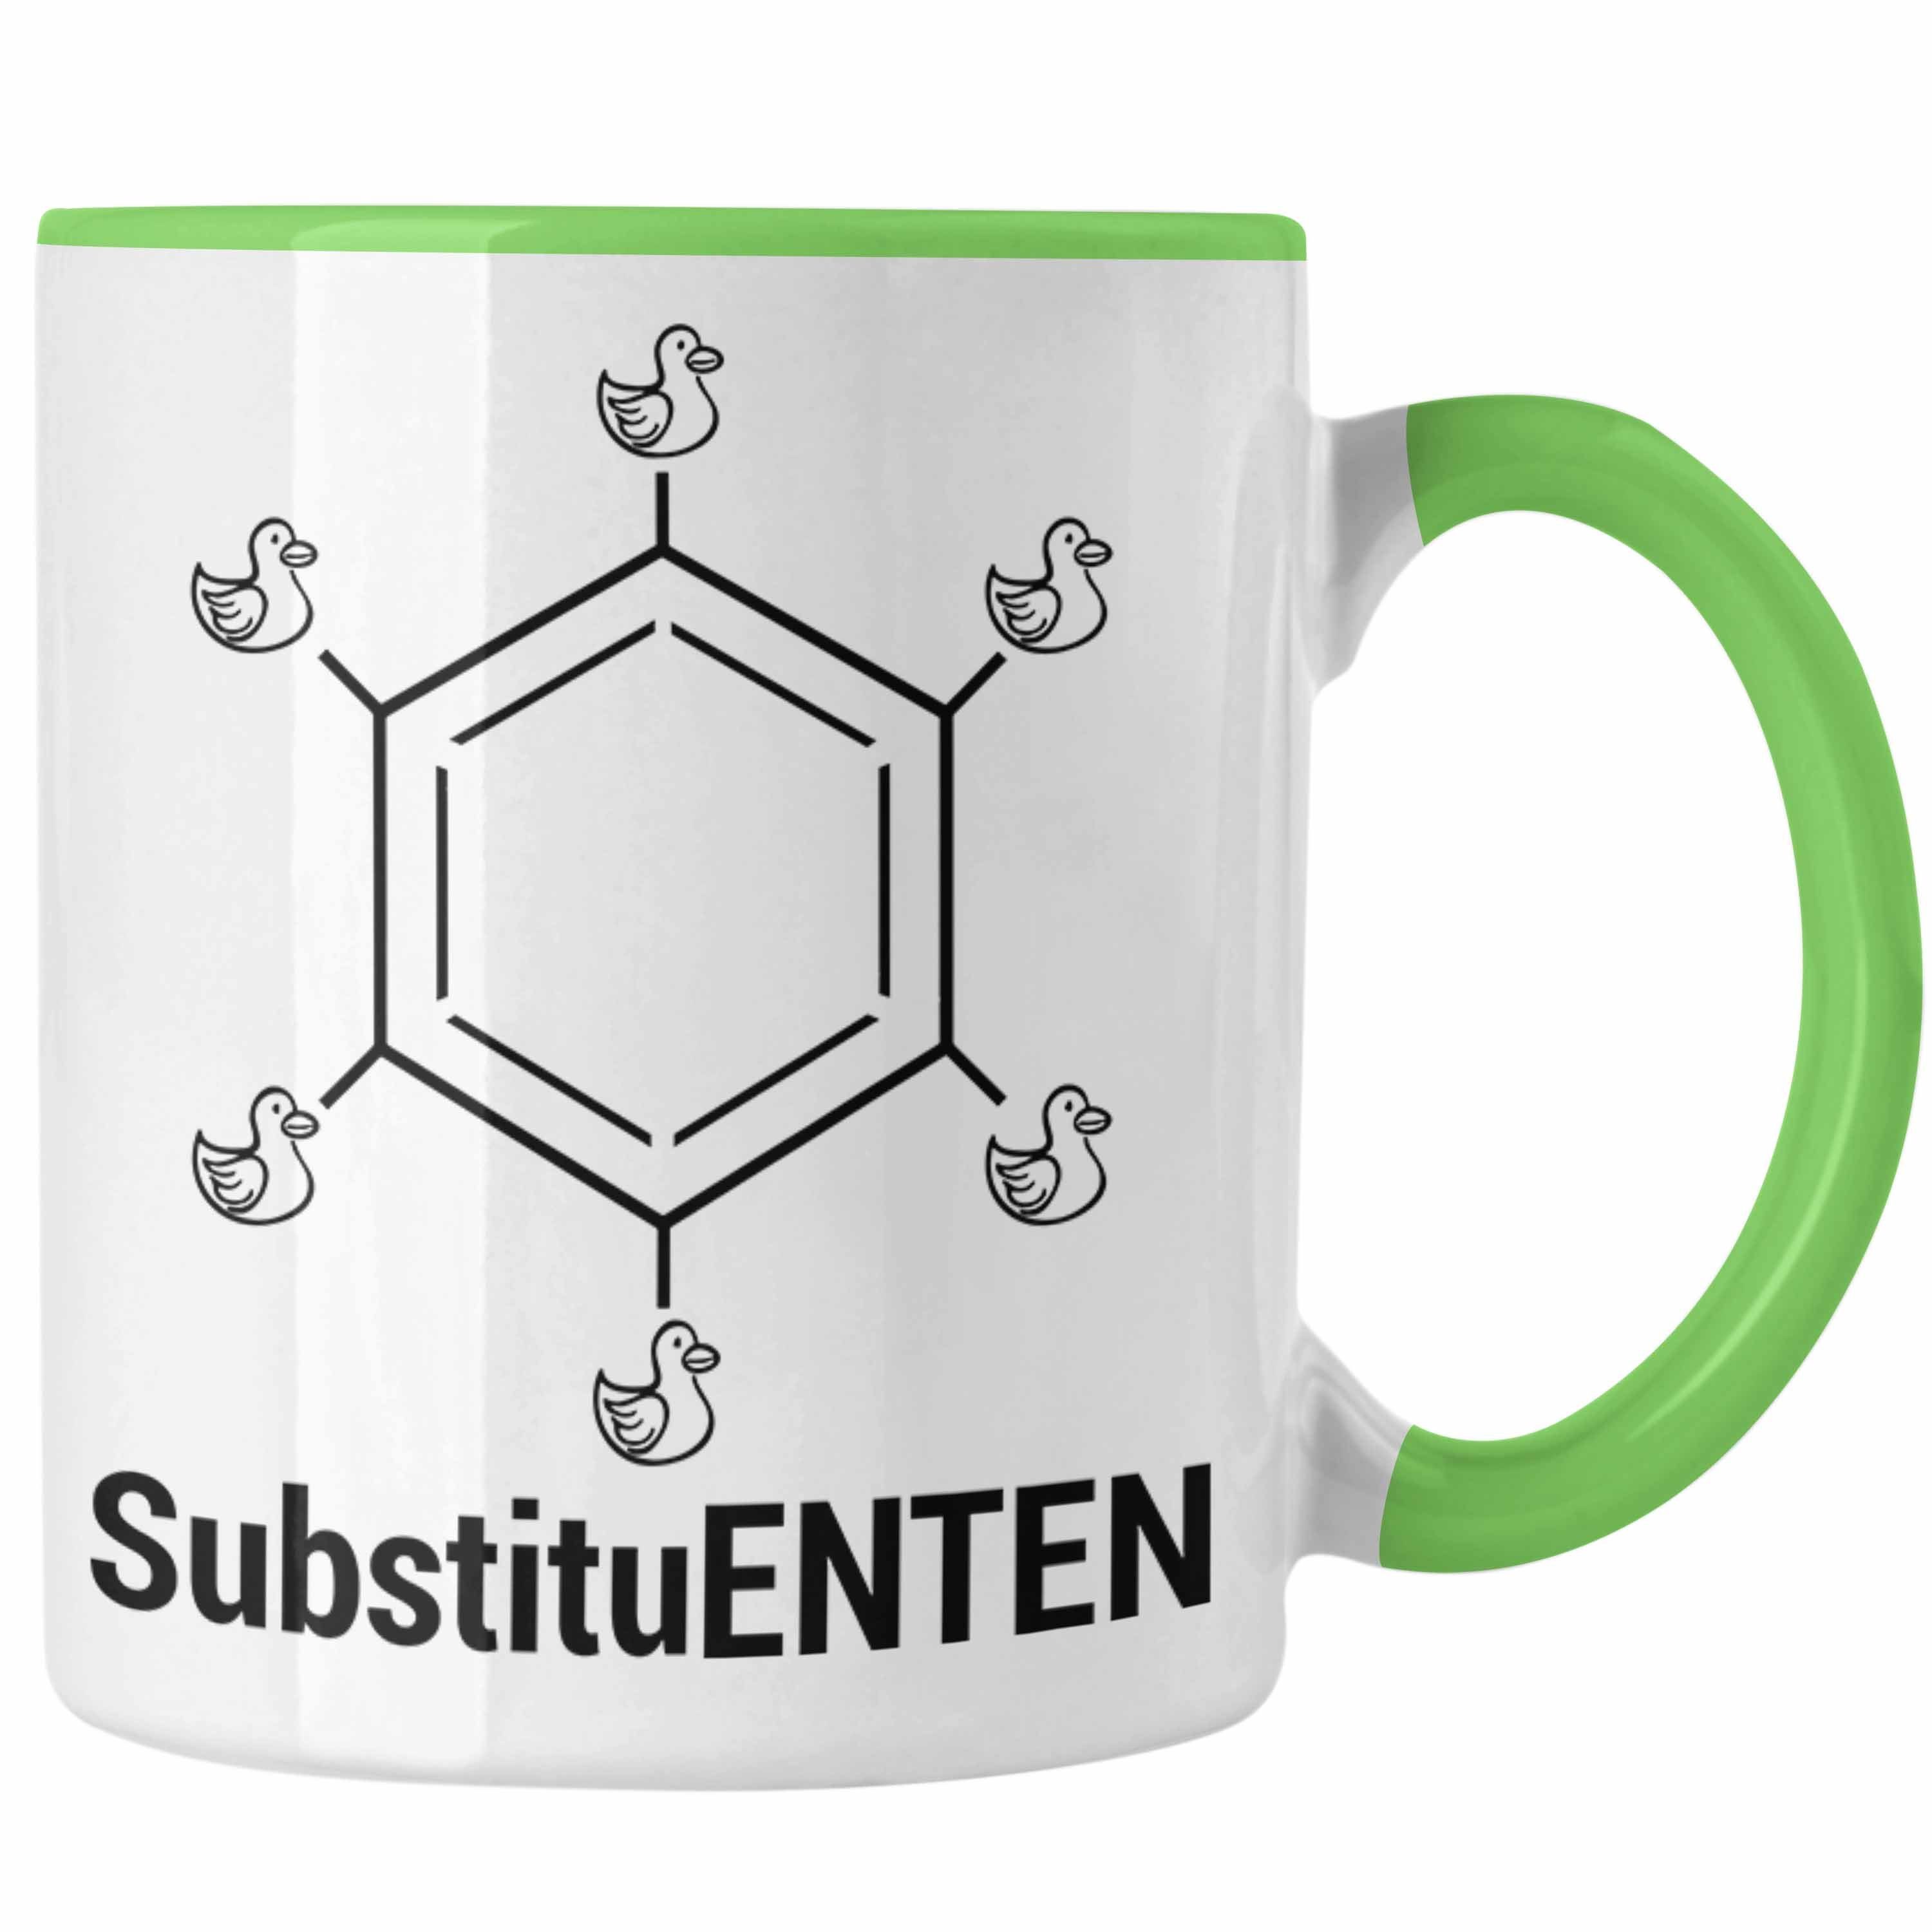 Trendation Tasse Chemie Tasse SubstituENTEN Chemiker Witz Organische Chemie Ente Kaffee Grün